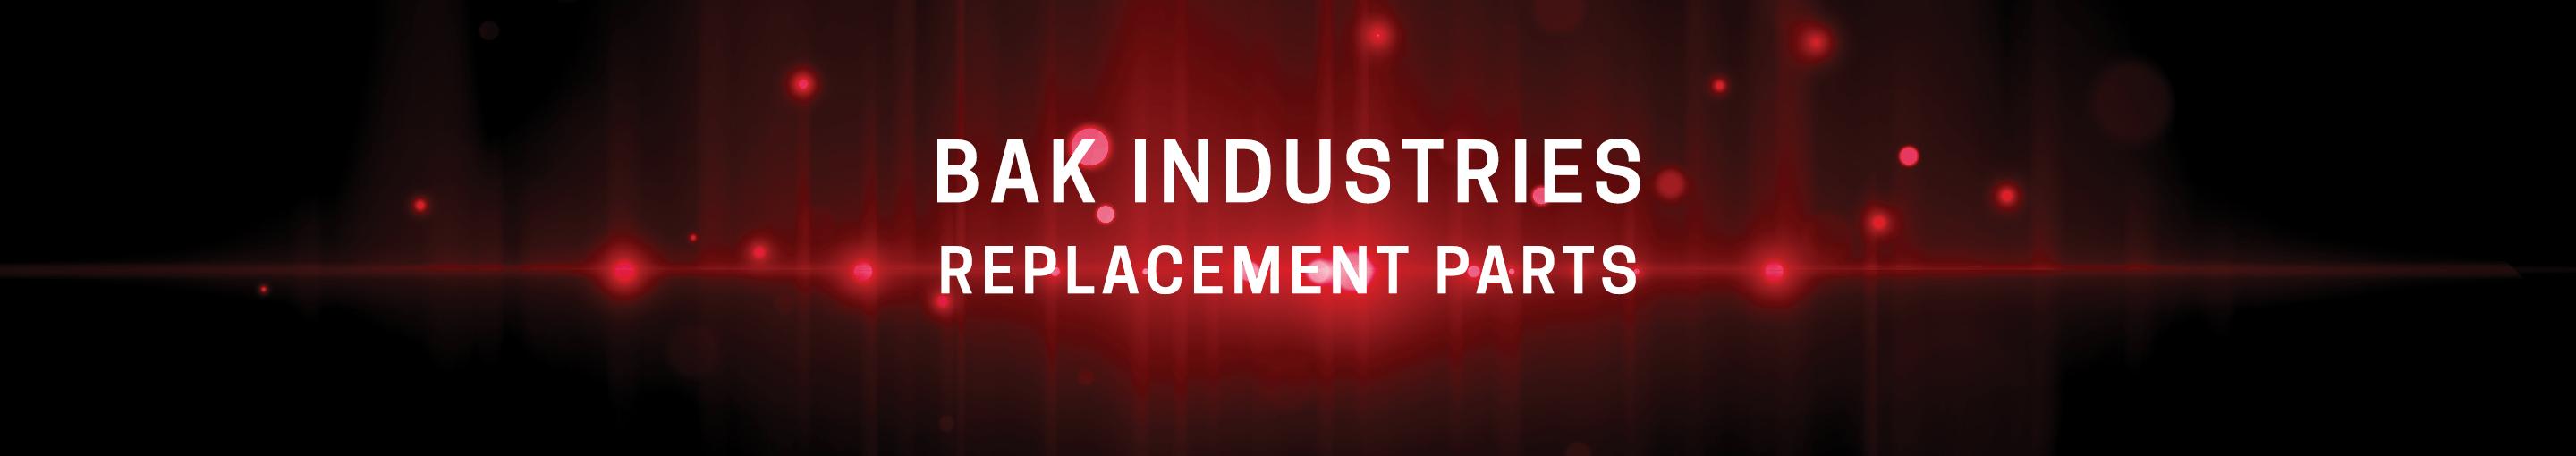 BAK Industries Replacement Parts